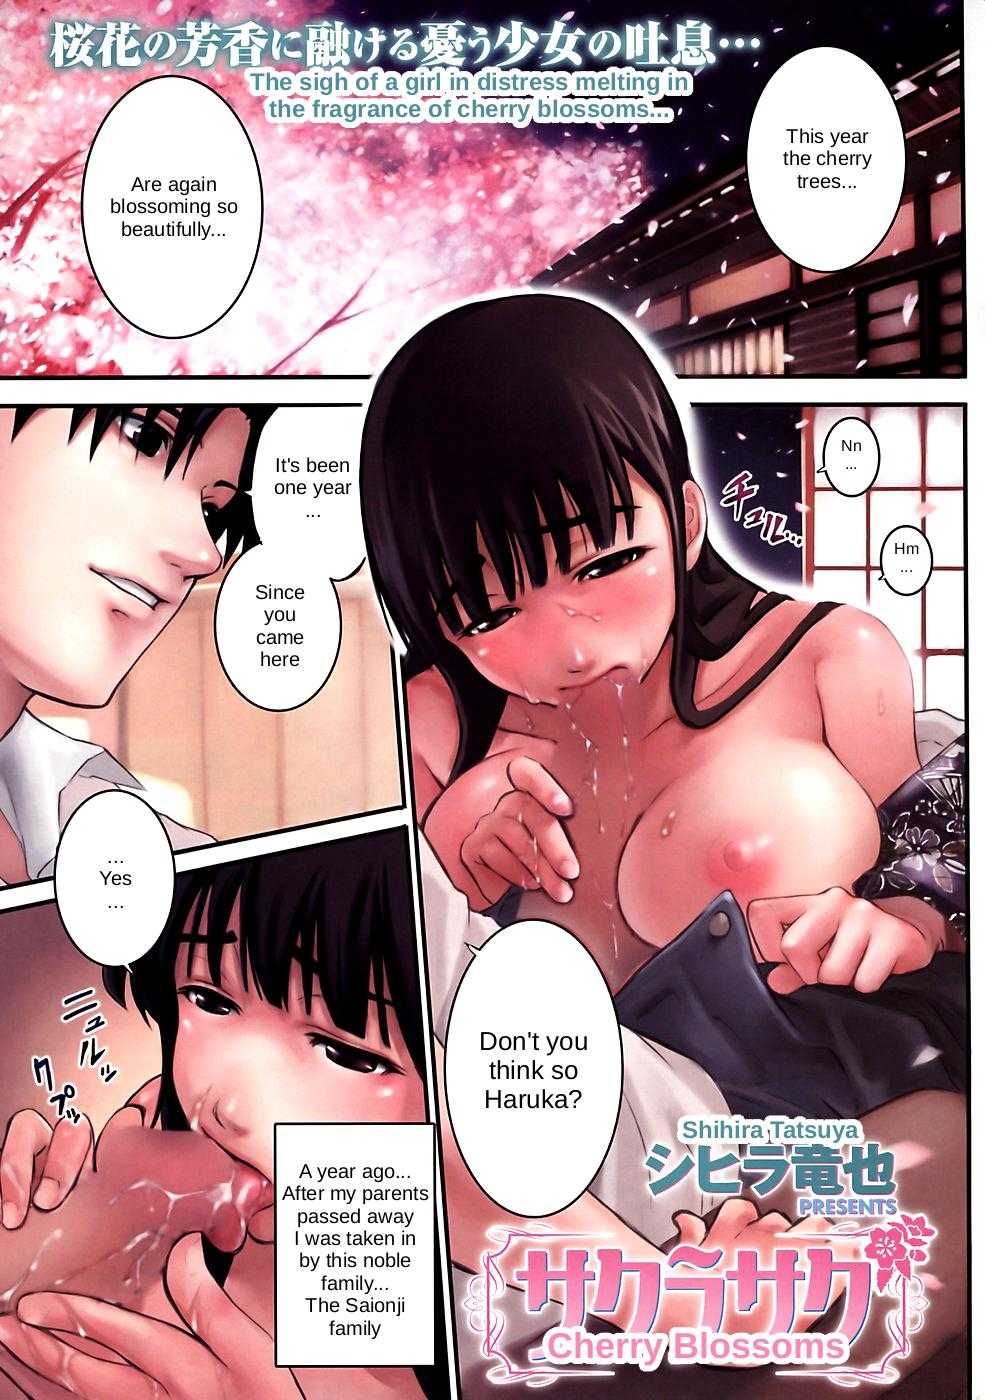 [Shihira Tatsuya] Cherry Blossoms [Comic Kairakuten Beast 2008-04] 